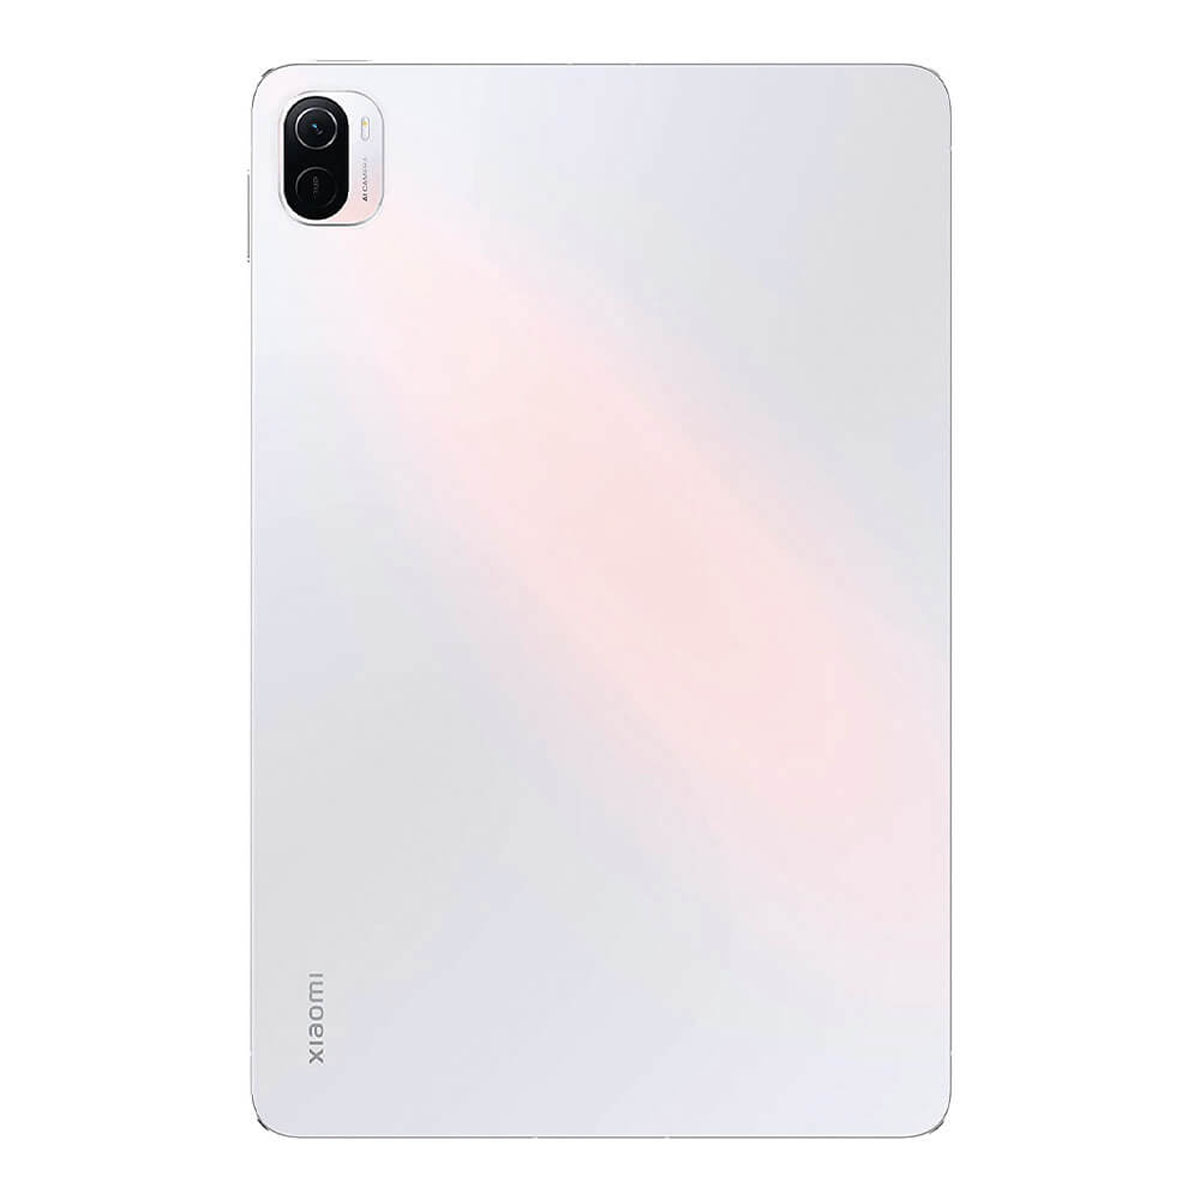 5 PEARL Zoll, WHITE XIAOMI 6GB/128GB, PAD White Pearl 11 128 VHU4102EU Tablet, GB,